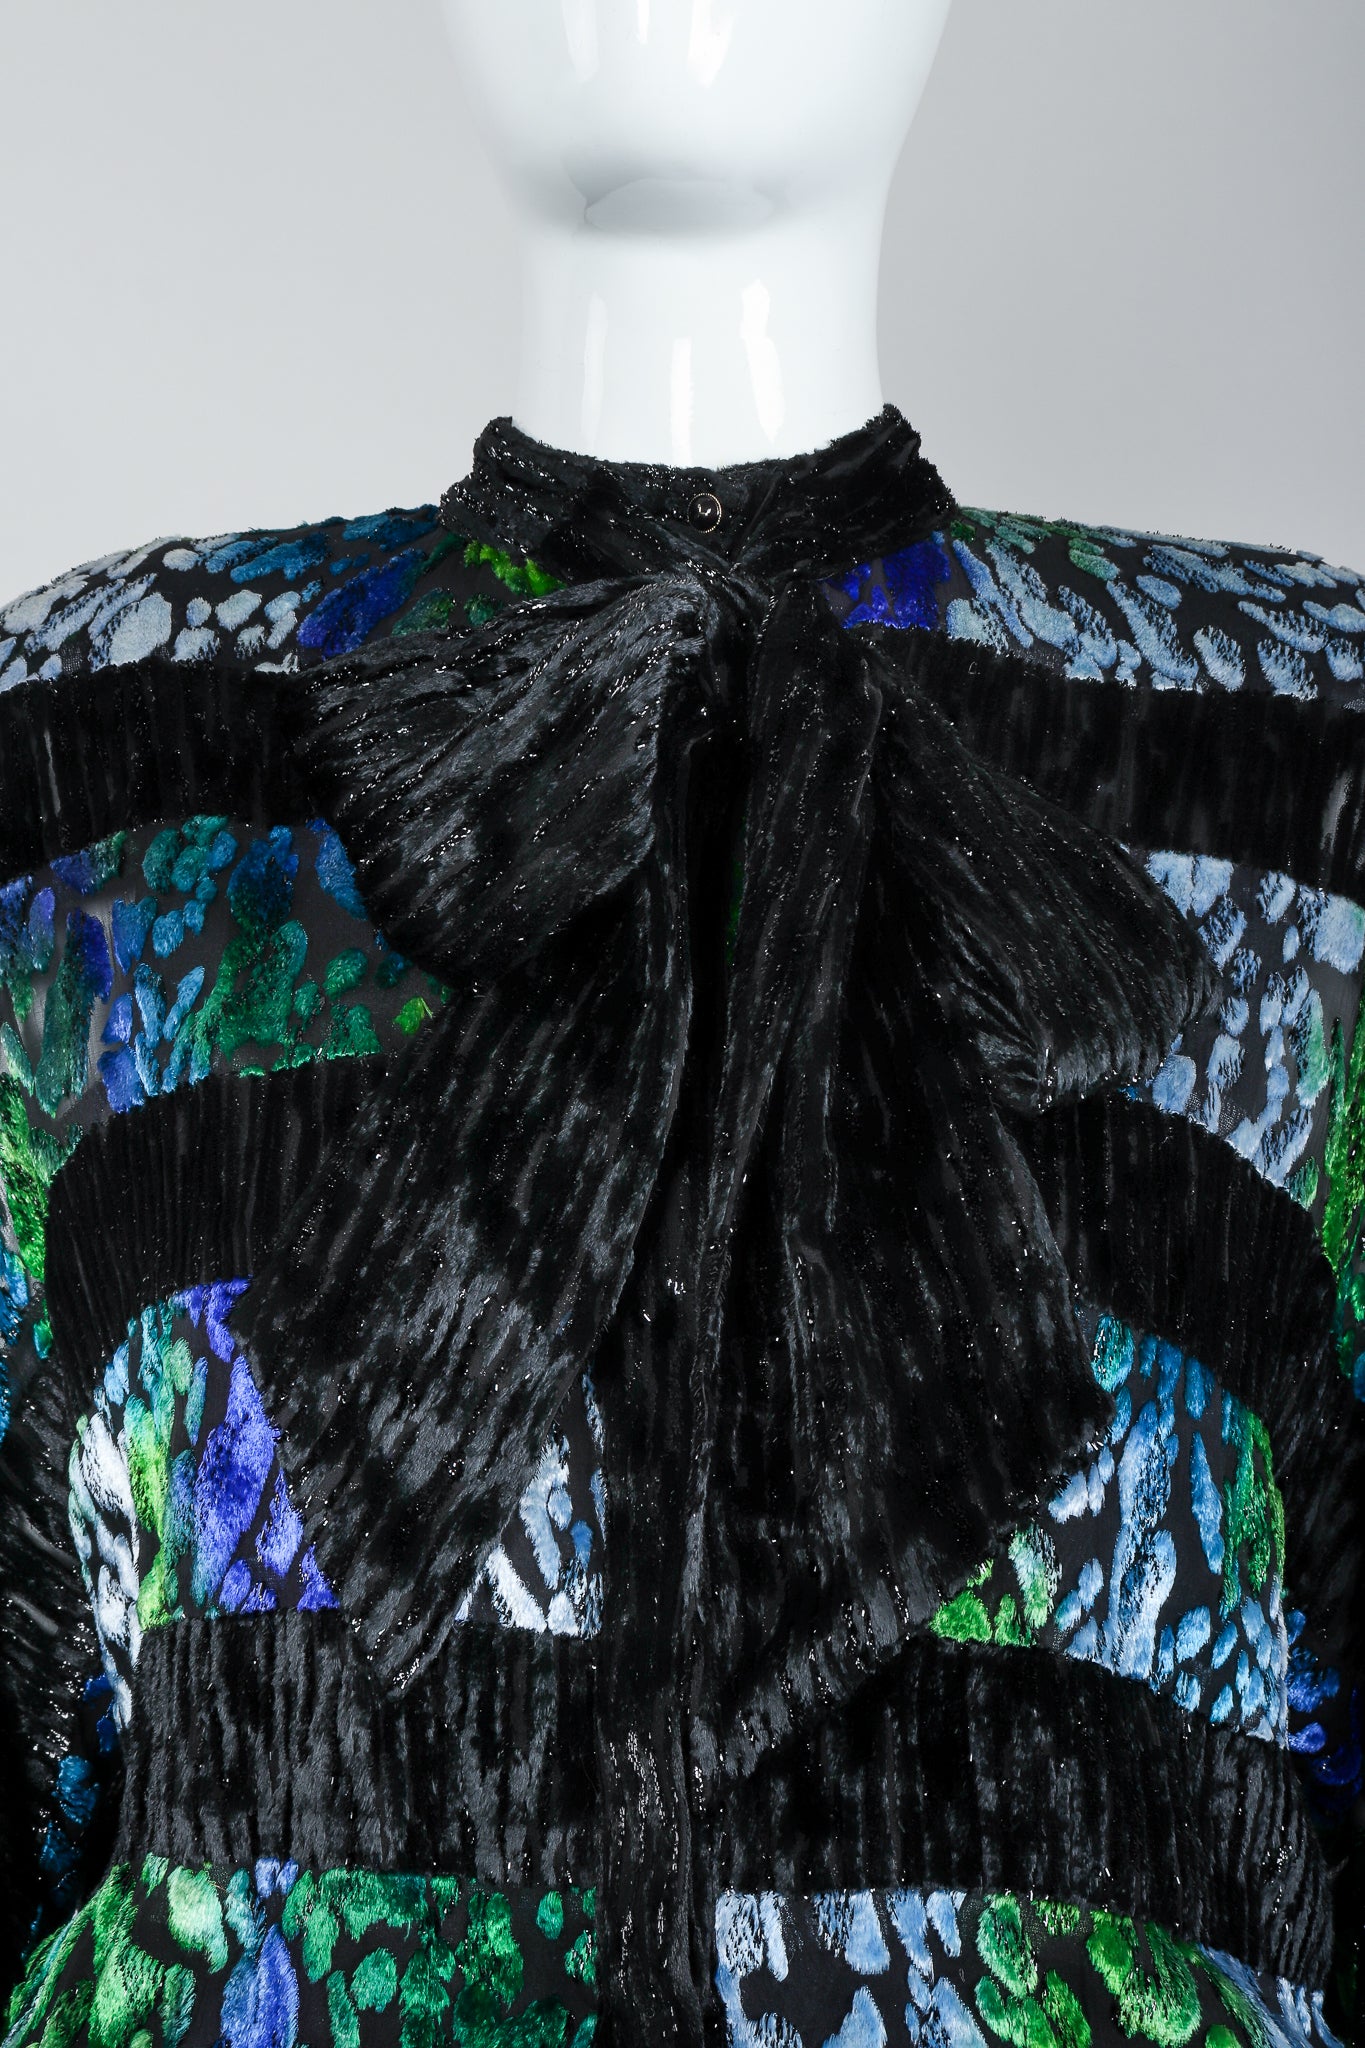 Recess Vintage Diane Freis Velvet Lamé Burnout Ombre Dress on Mannequin, neck tie